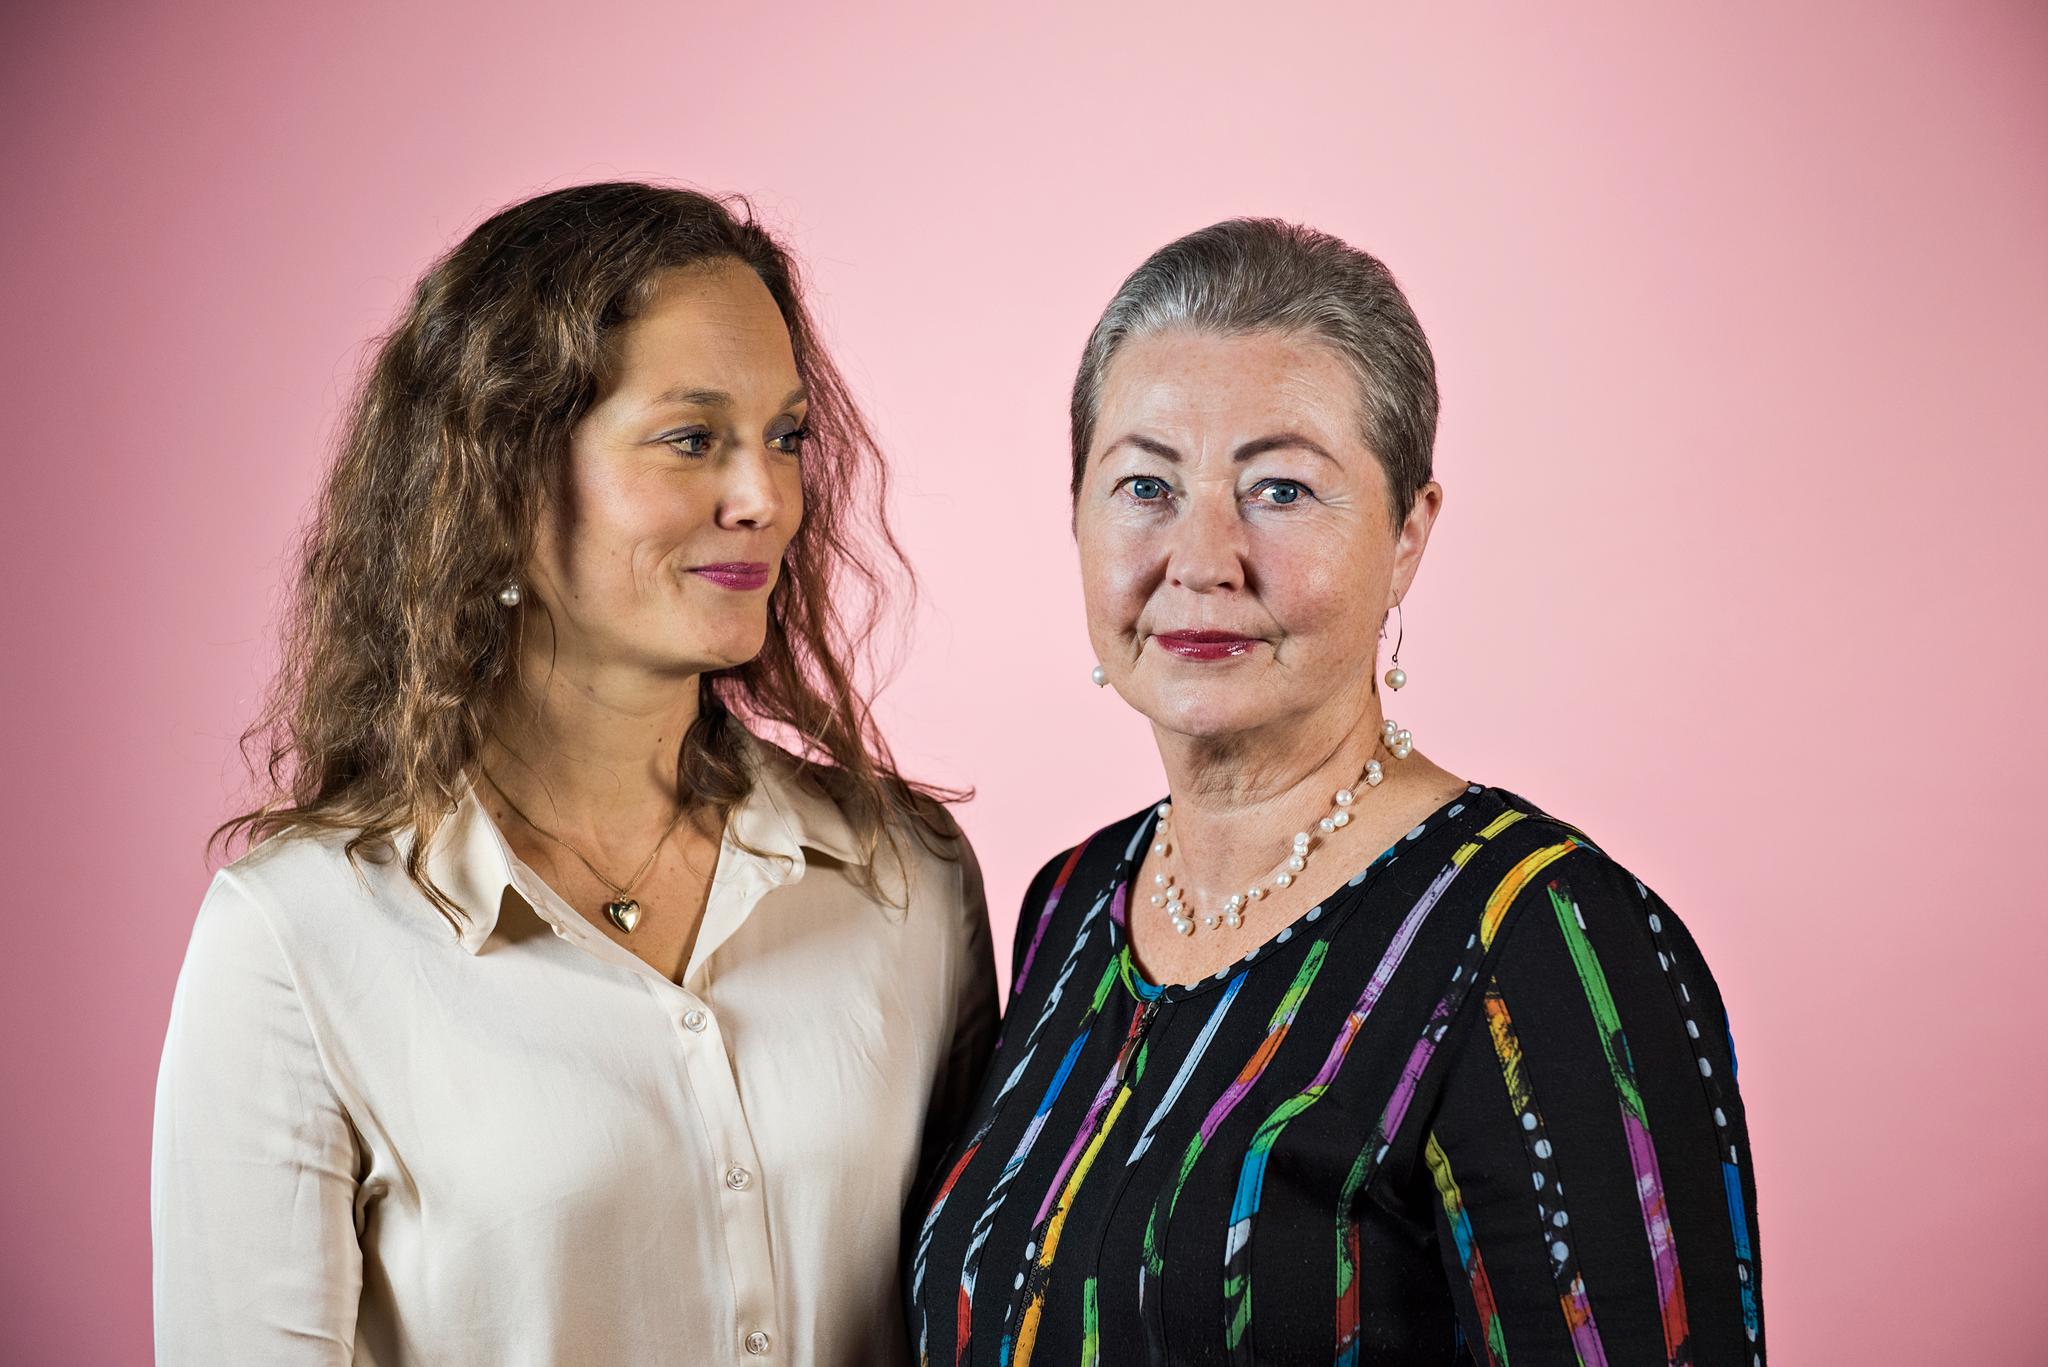 Christina Five Berg (t.v.) er jurist og forfatter av boken «Kaci, min mamma». Her med sin mor, Kaci Kullmann Five i forbindelse med en reportasje i A-magasinet i 2015 (lenke lenger ned i saken). Five gikk bort i februar 2017.